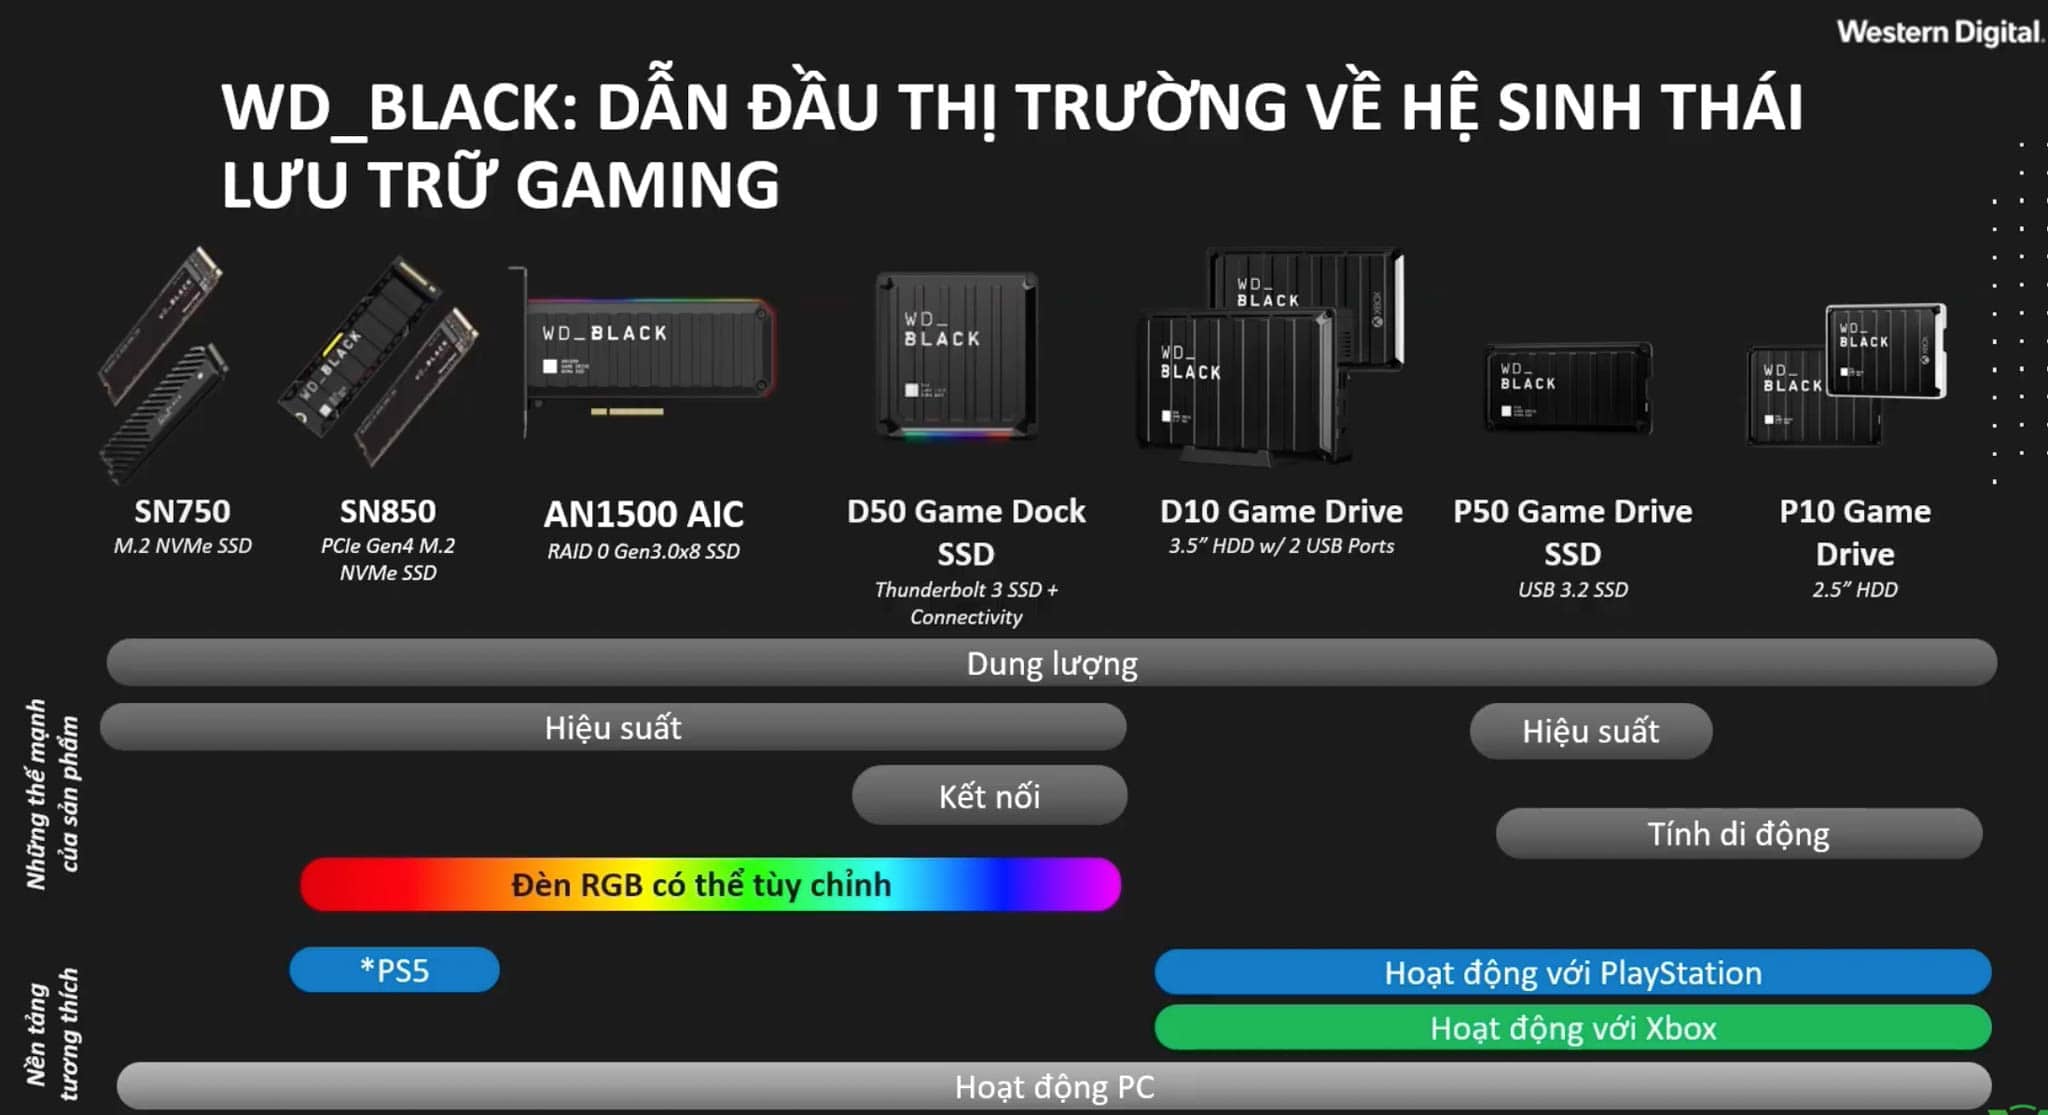 Western Digital nâng cấp trải nghiệm gaming với nhóm sản phẩm WD_Black mở rộng